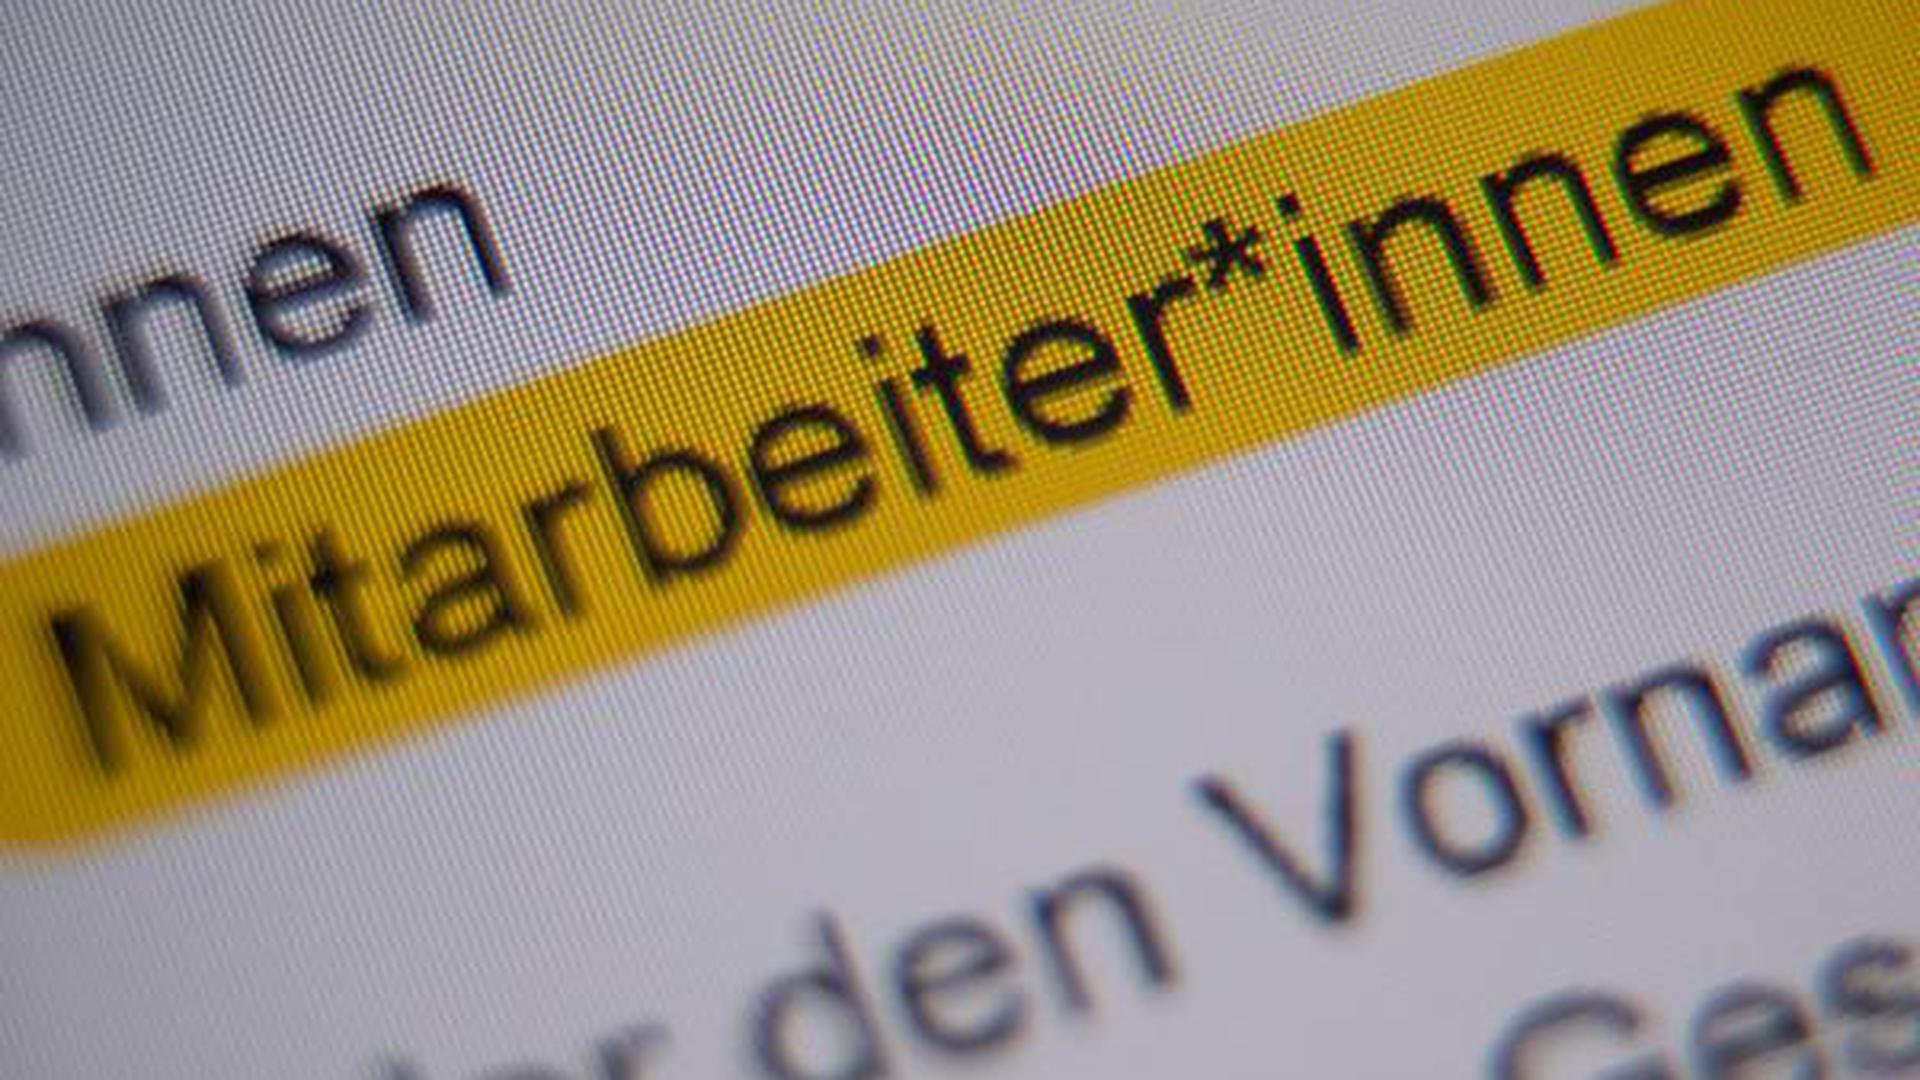 Die Anrede "Mitarbeiter*innen" ist in der Handreichung "Hinweise zur Umsetzung der geschlechtersensiblen Sprache für die Verwaltung der Landeshauptstadt Stuttgart" markiert und auf einem Bildschirm zu sehen.